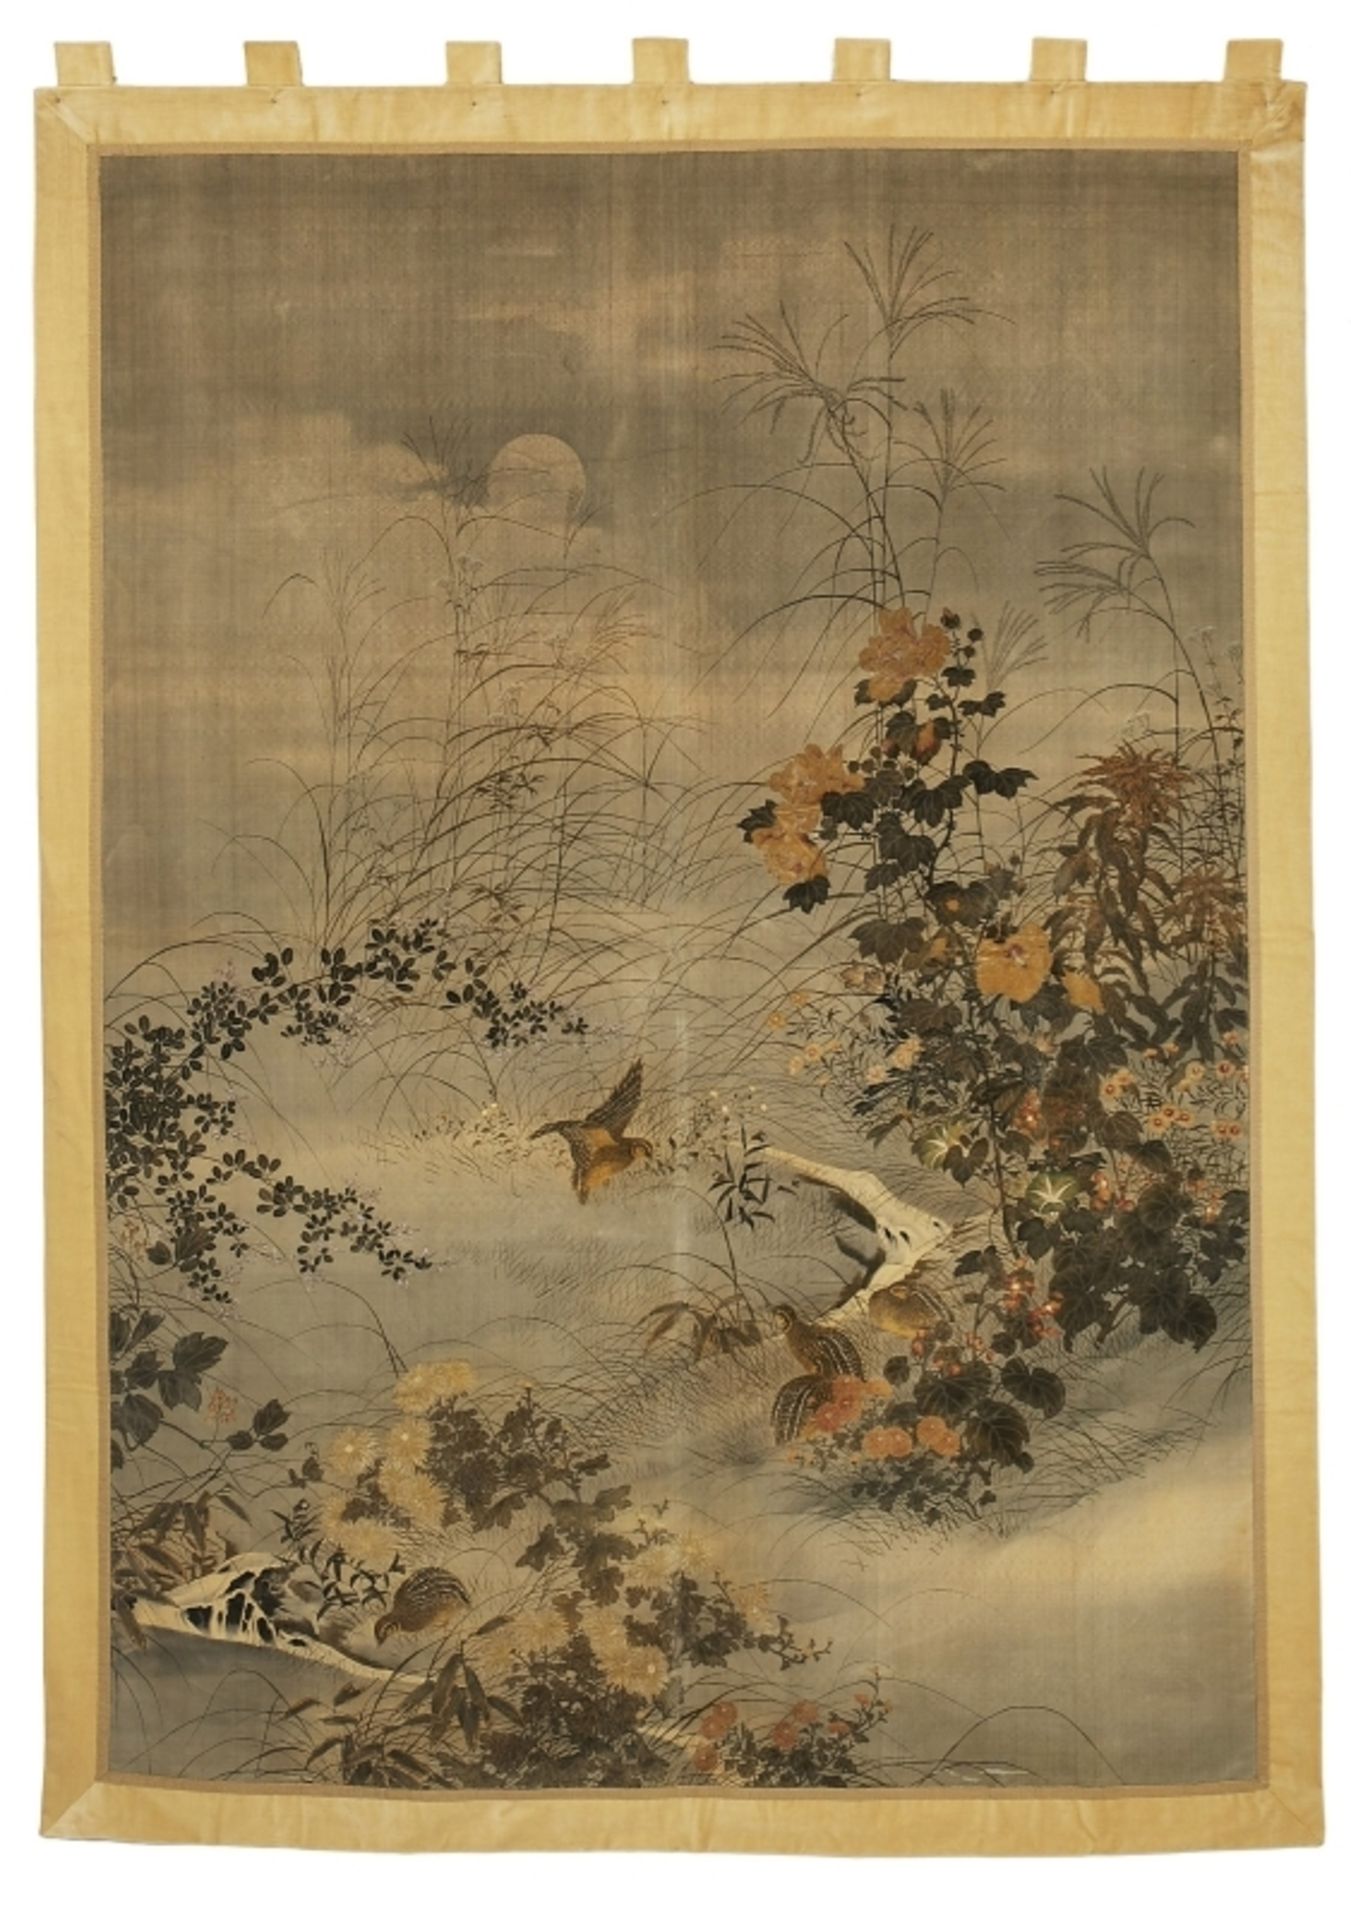 Wandbehang, Japan um 1900